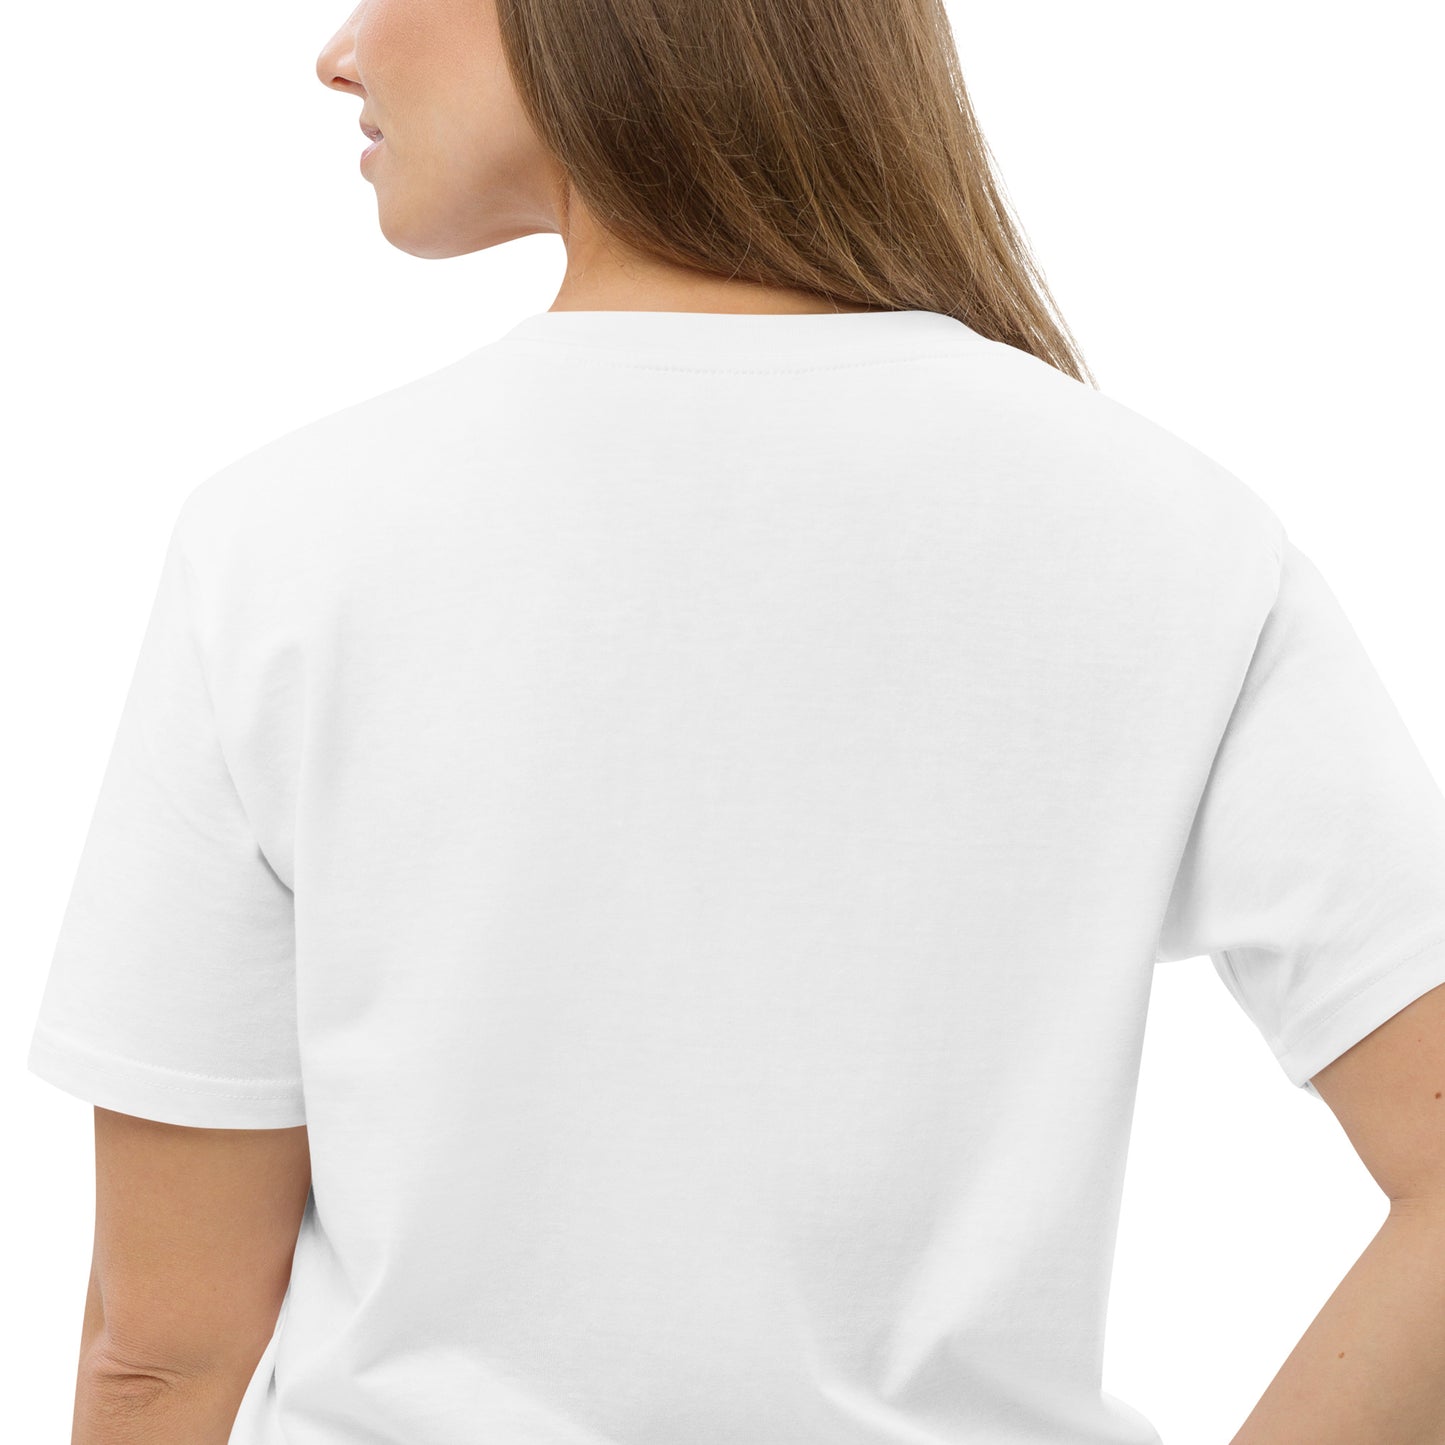 Dont lose focus, Unisex organic cotton t-shirt